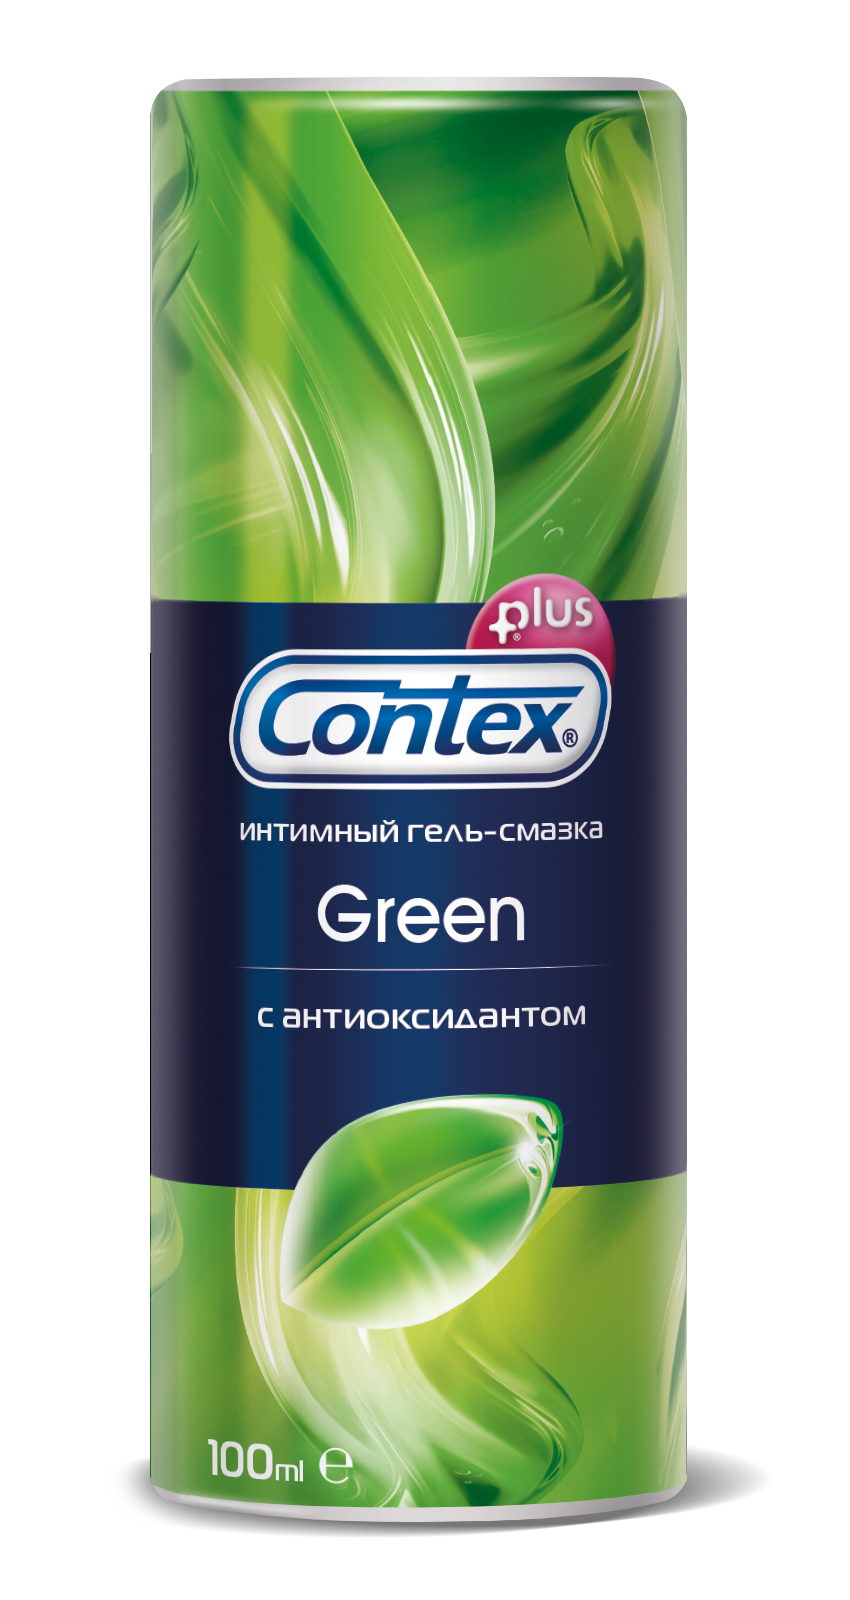 Contex Green 100 мл. Гель-смазка Contex 30 мл Green. Contex гель-смазка Green 100мл. Смазка 100 мл Контех.